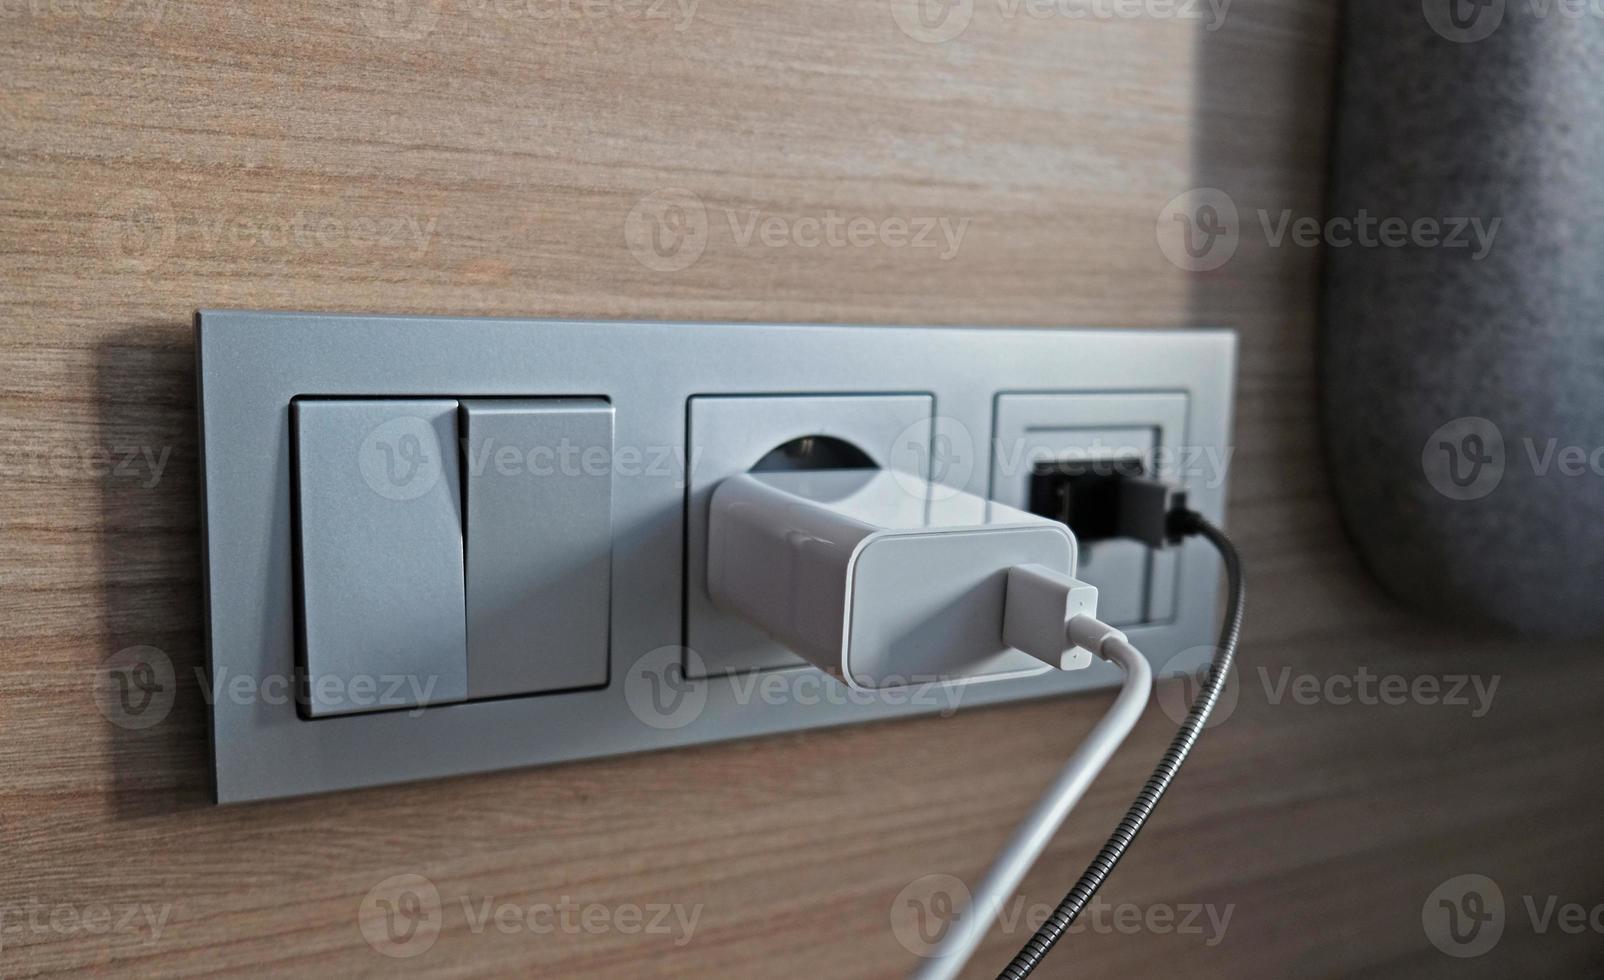 ontvangen erwt beweging elektrisch macht stopcontact, USB stopcontact, licht schakelaar Aan de hout  paneel in de interieur van de